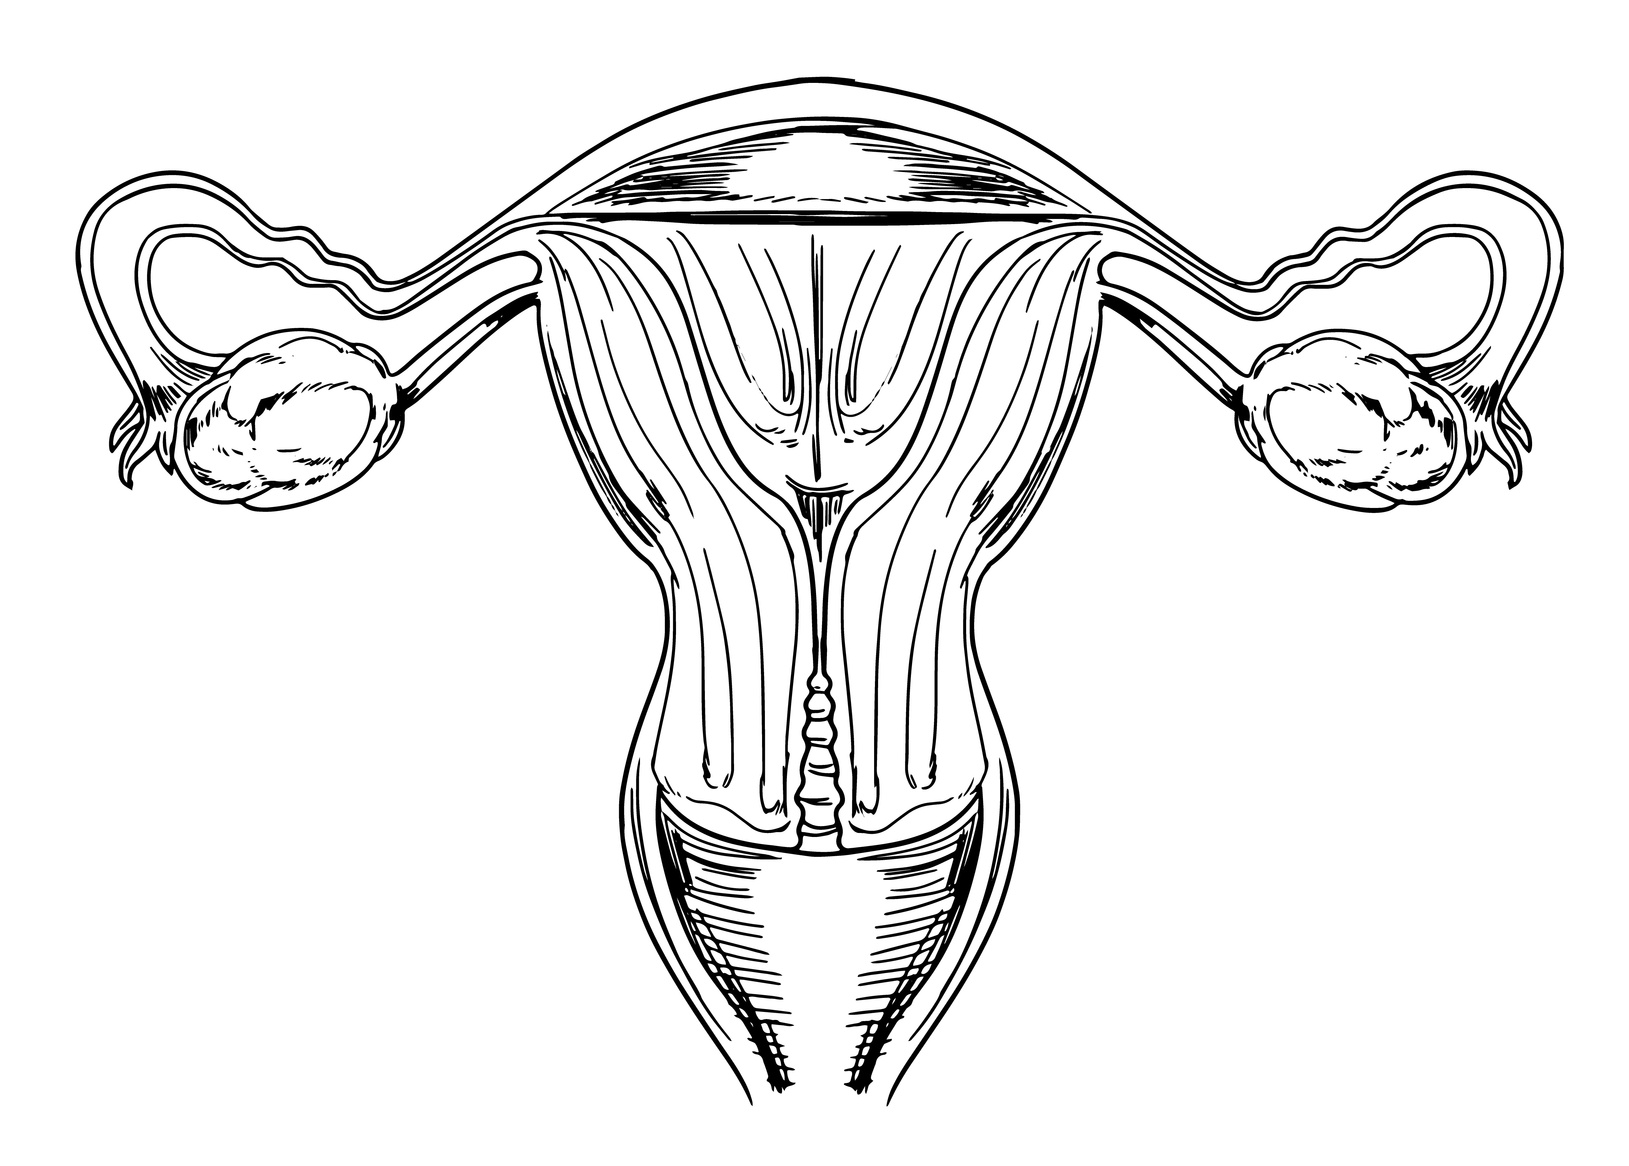 Tengo ovarios poliquisticos que tienden a responder con hisperestimulación ovárica.¿Que debo hacer?